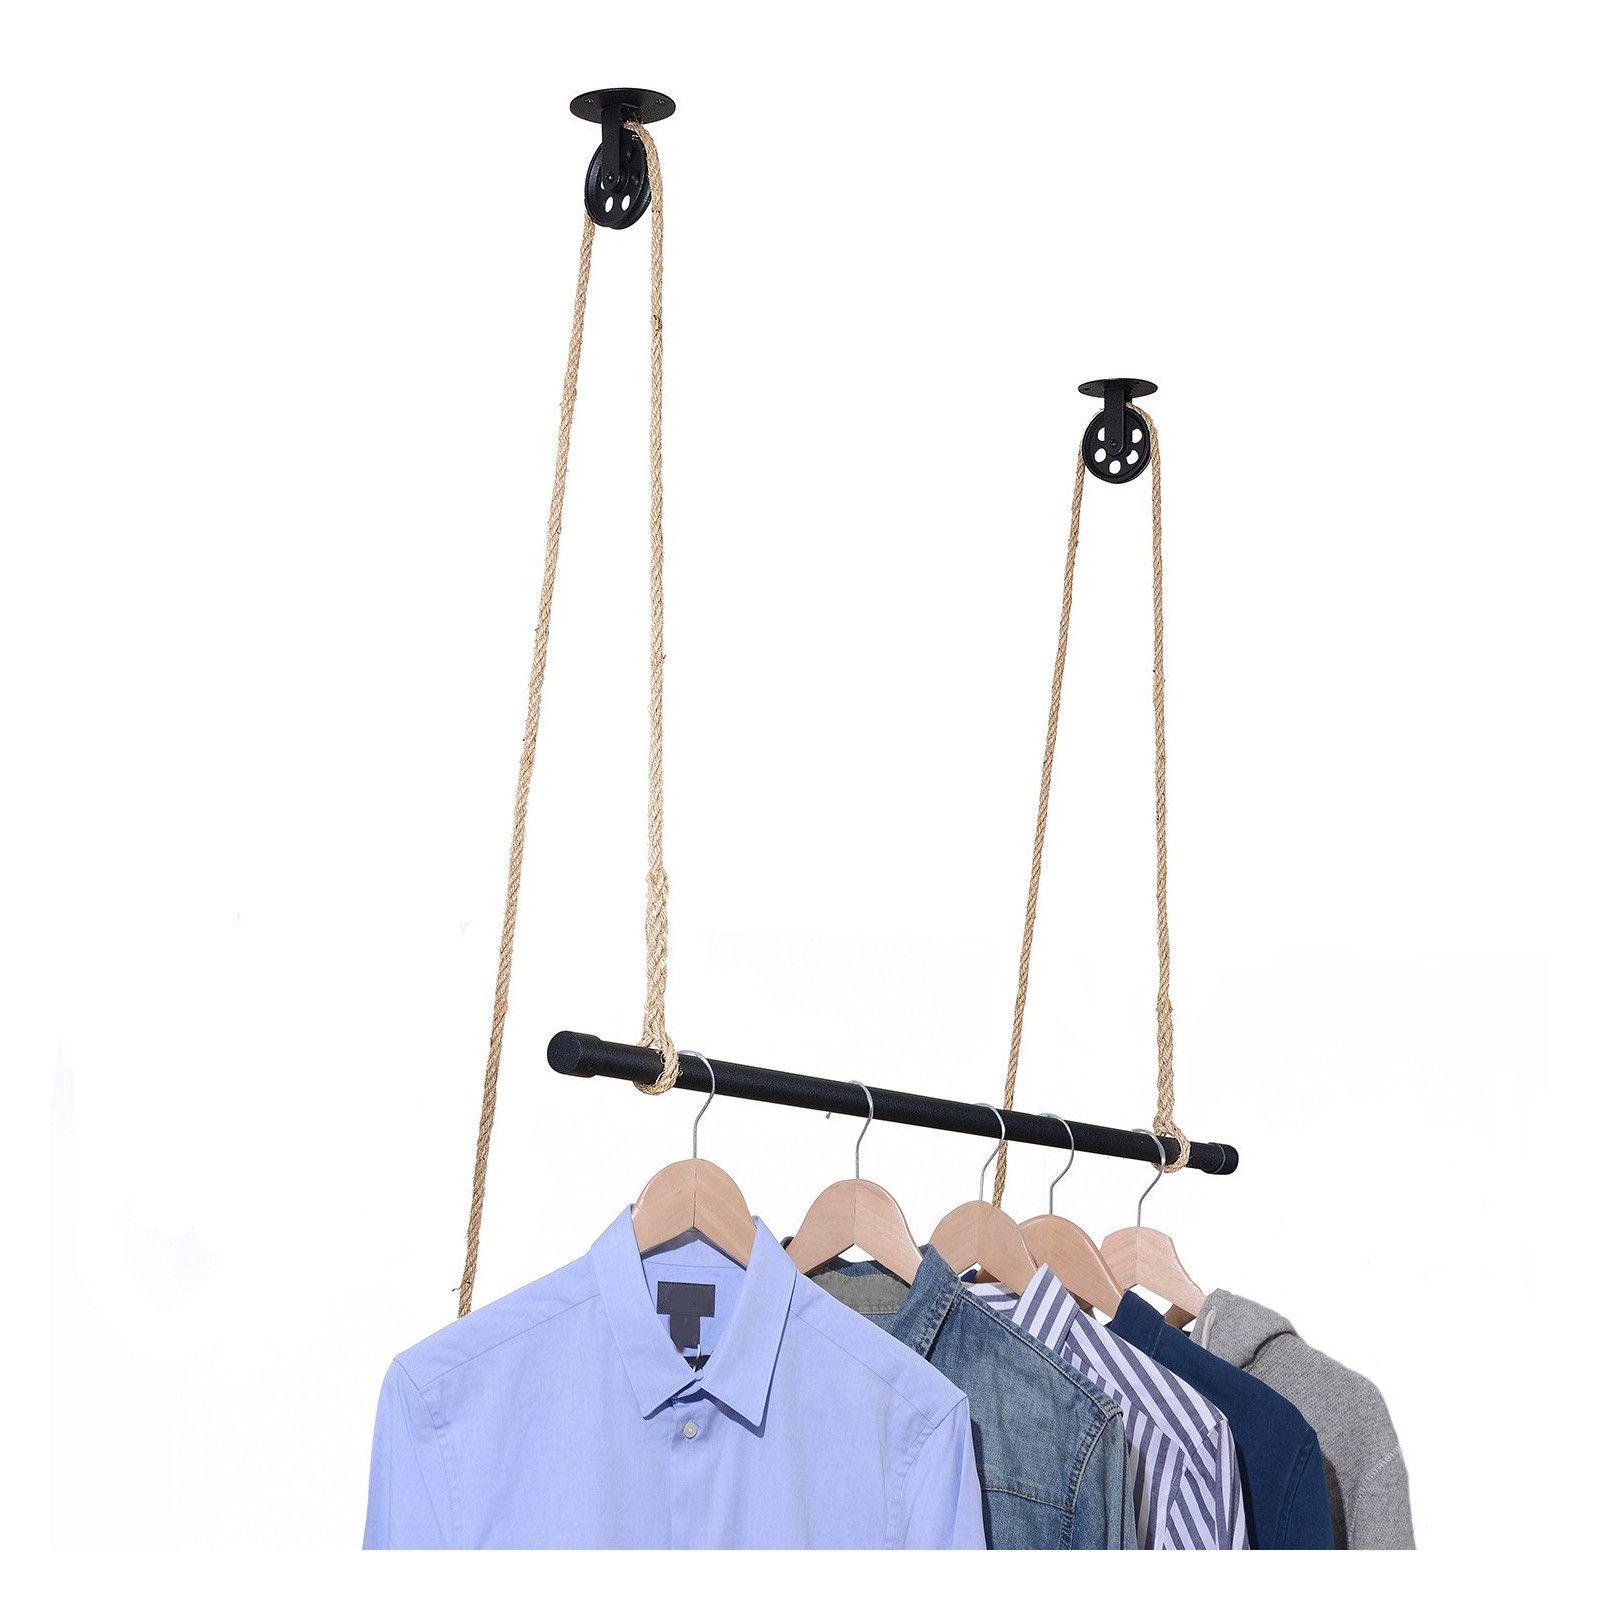 Kit penderie suspendue Industriel - Barre portant dressing sous plafond avec corde et poulie 1 m - L